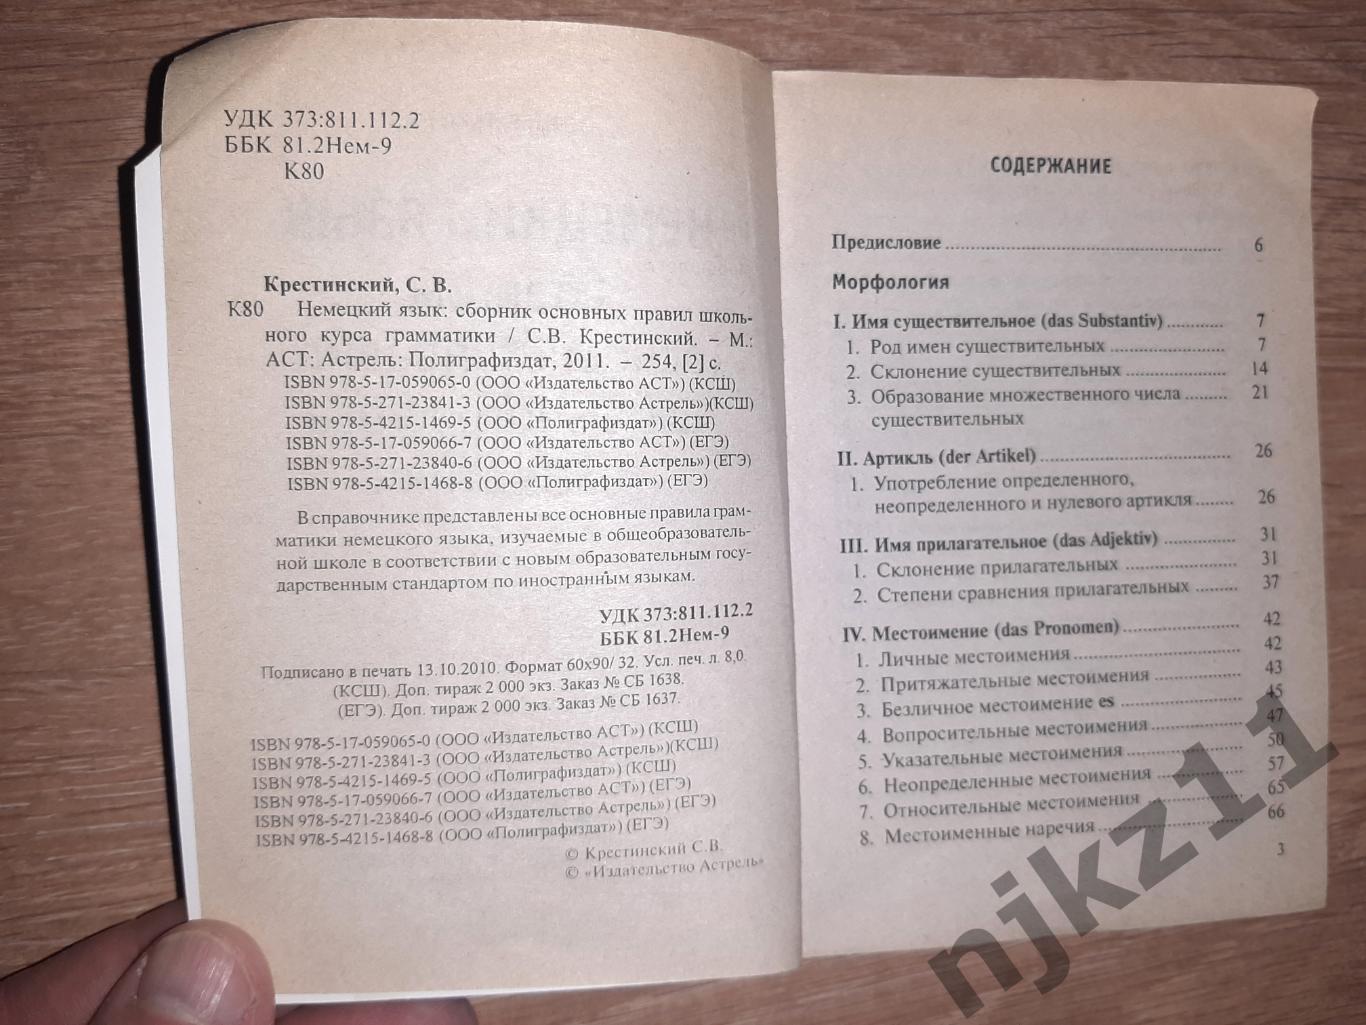 Немецкий язык: сборник основных правил школьного курса грамматики 2